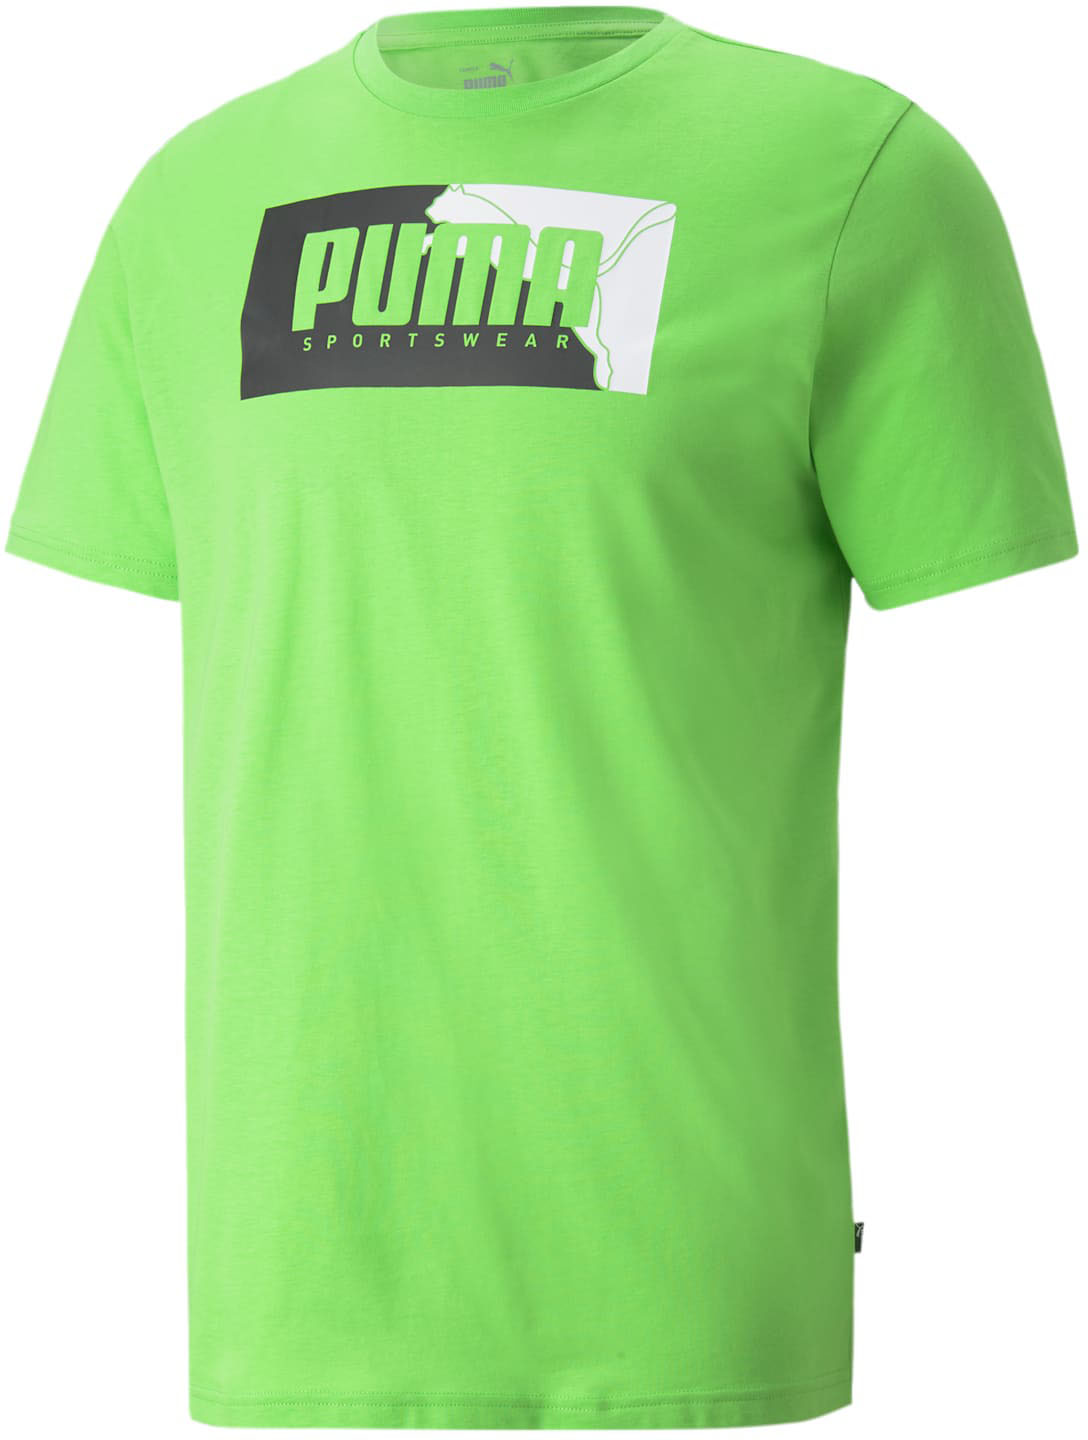 Puma - Mens Puma Box Graphic Us T-Shirt